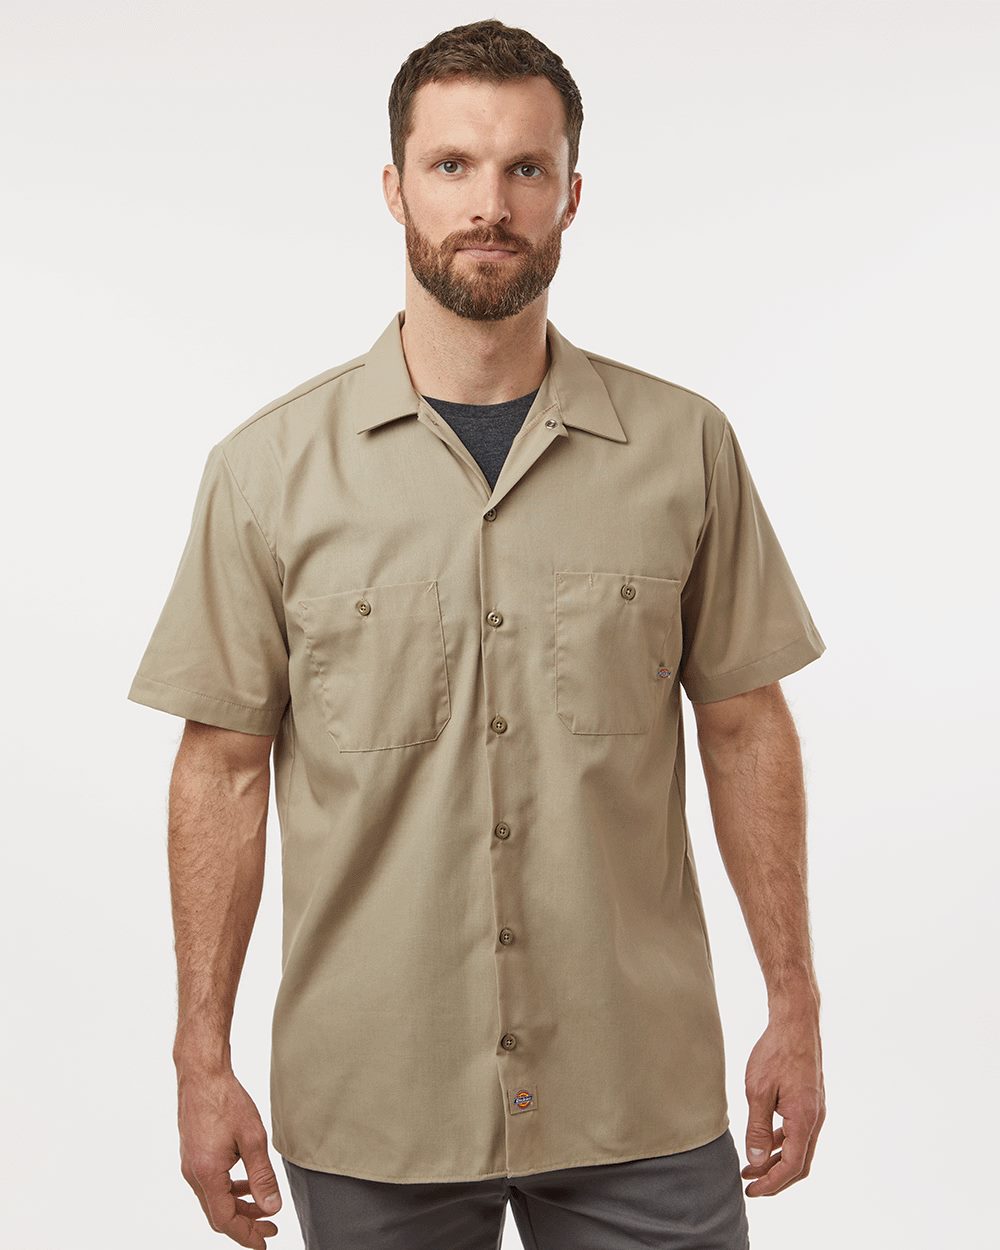 Dickies S535 - Industrial Short Sleeve Work Shirt